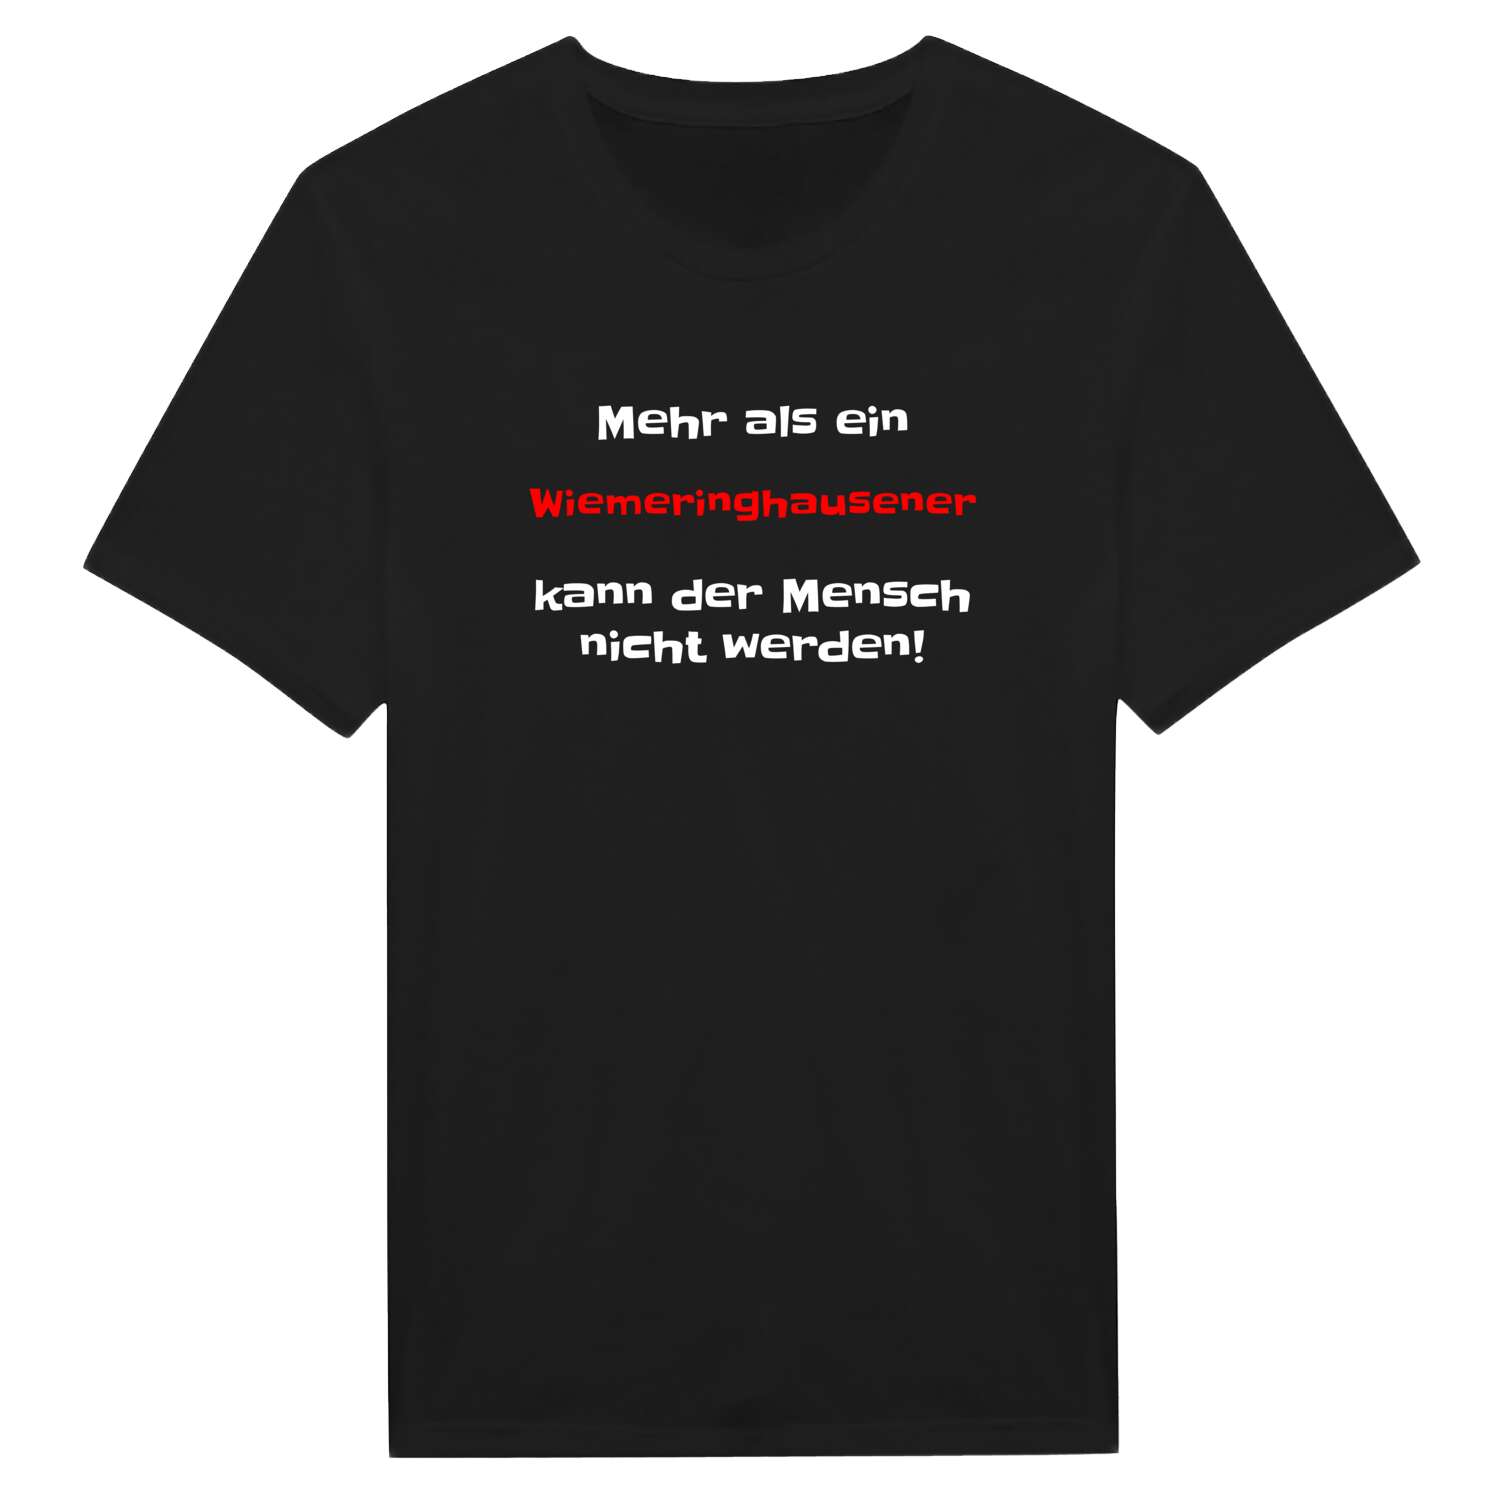 Wiemeringhausen T-Shirt »Mehr als ein«